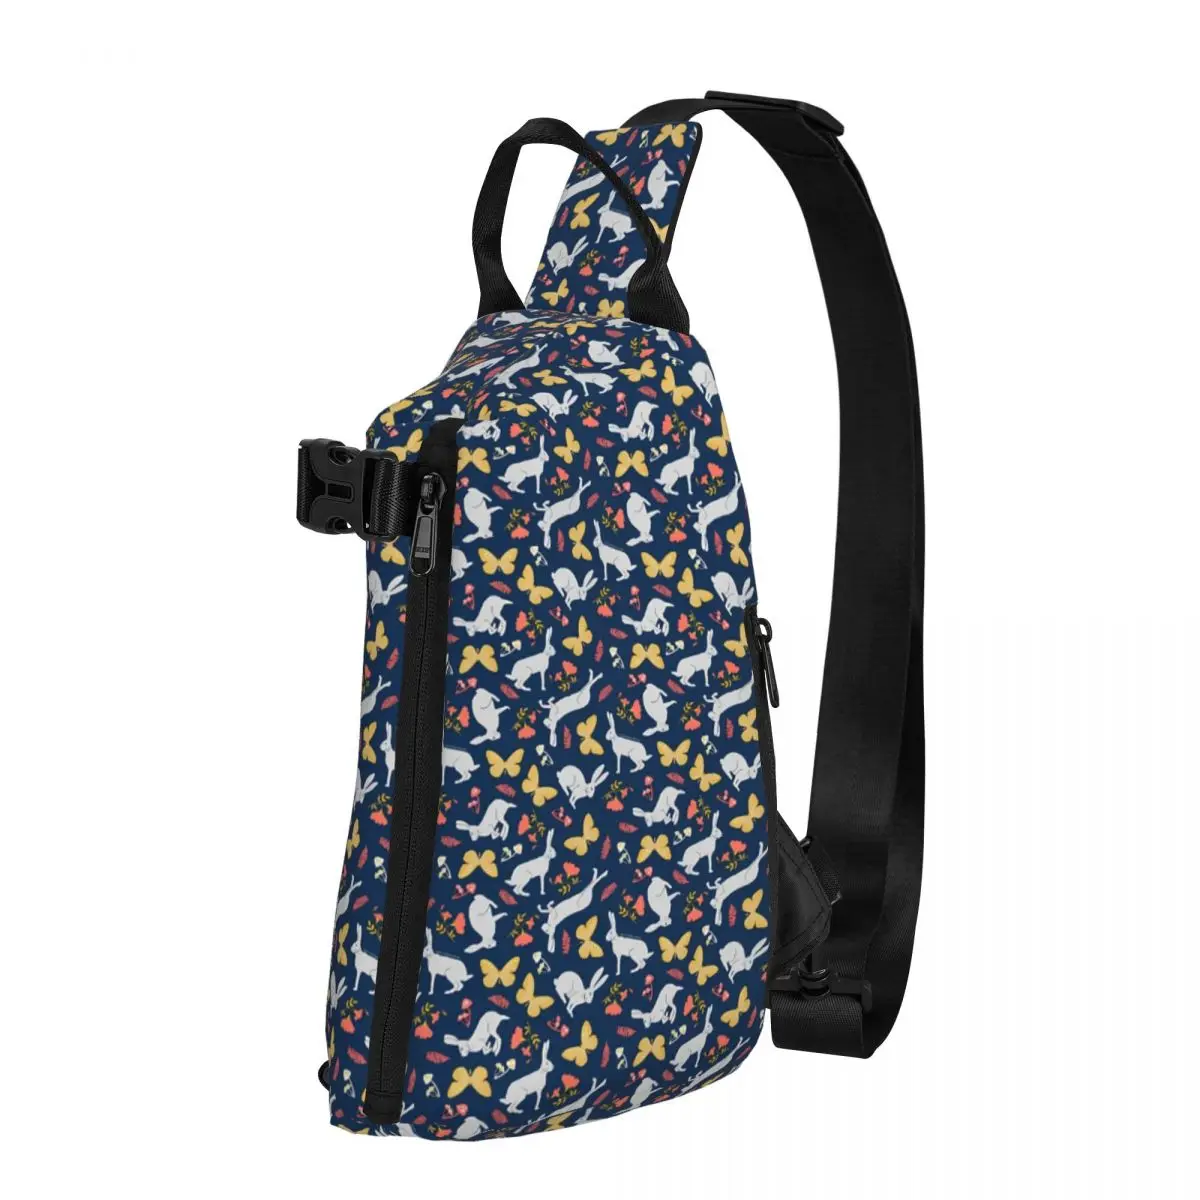 

Нагрудная сумка с милым кроликом для мужчин, сумка на плечо с принтом бабочек для кемпинга, модная маленькая сумочка с принтом для телефона, мотоциклетная слинг-сумка